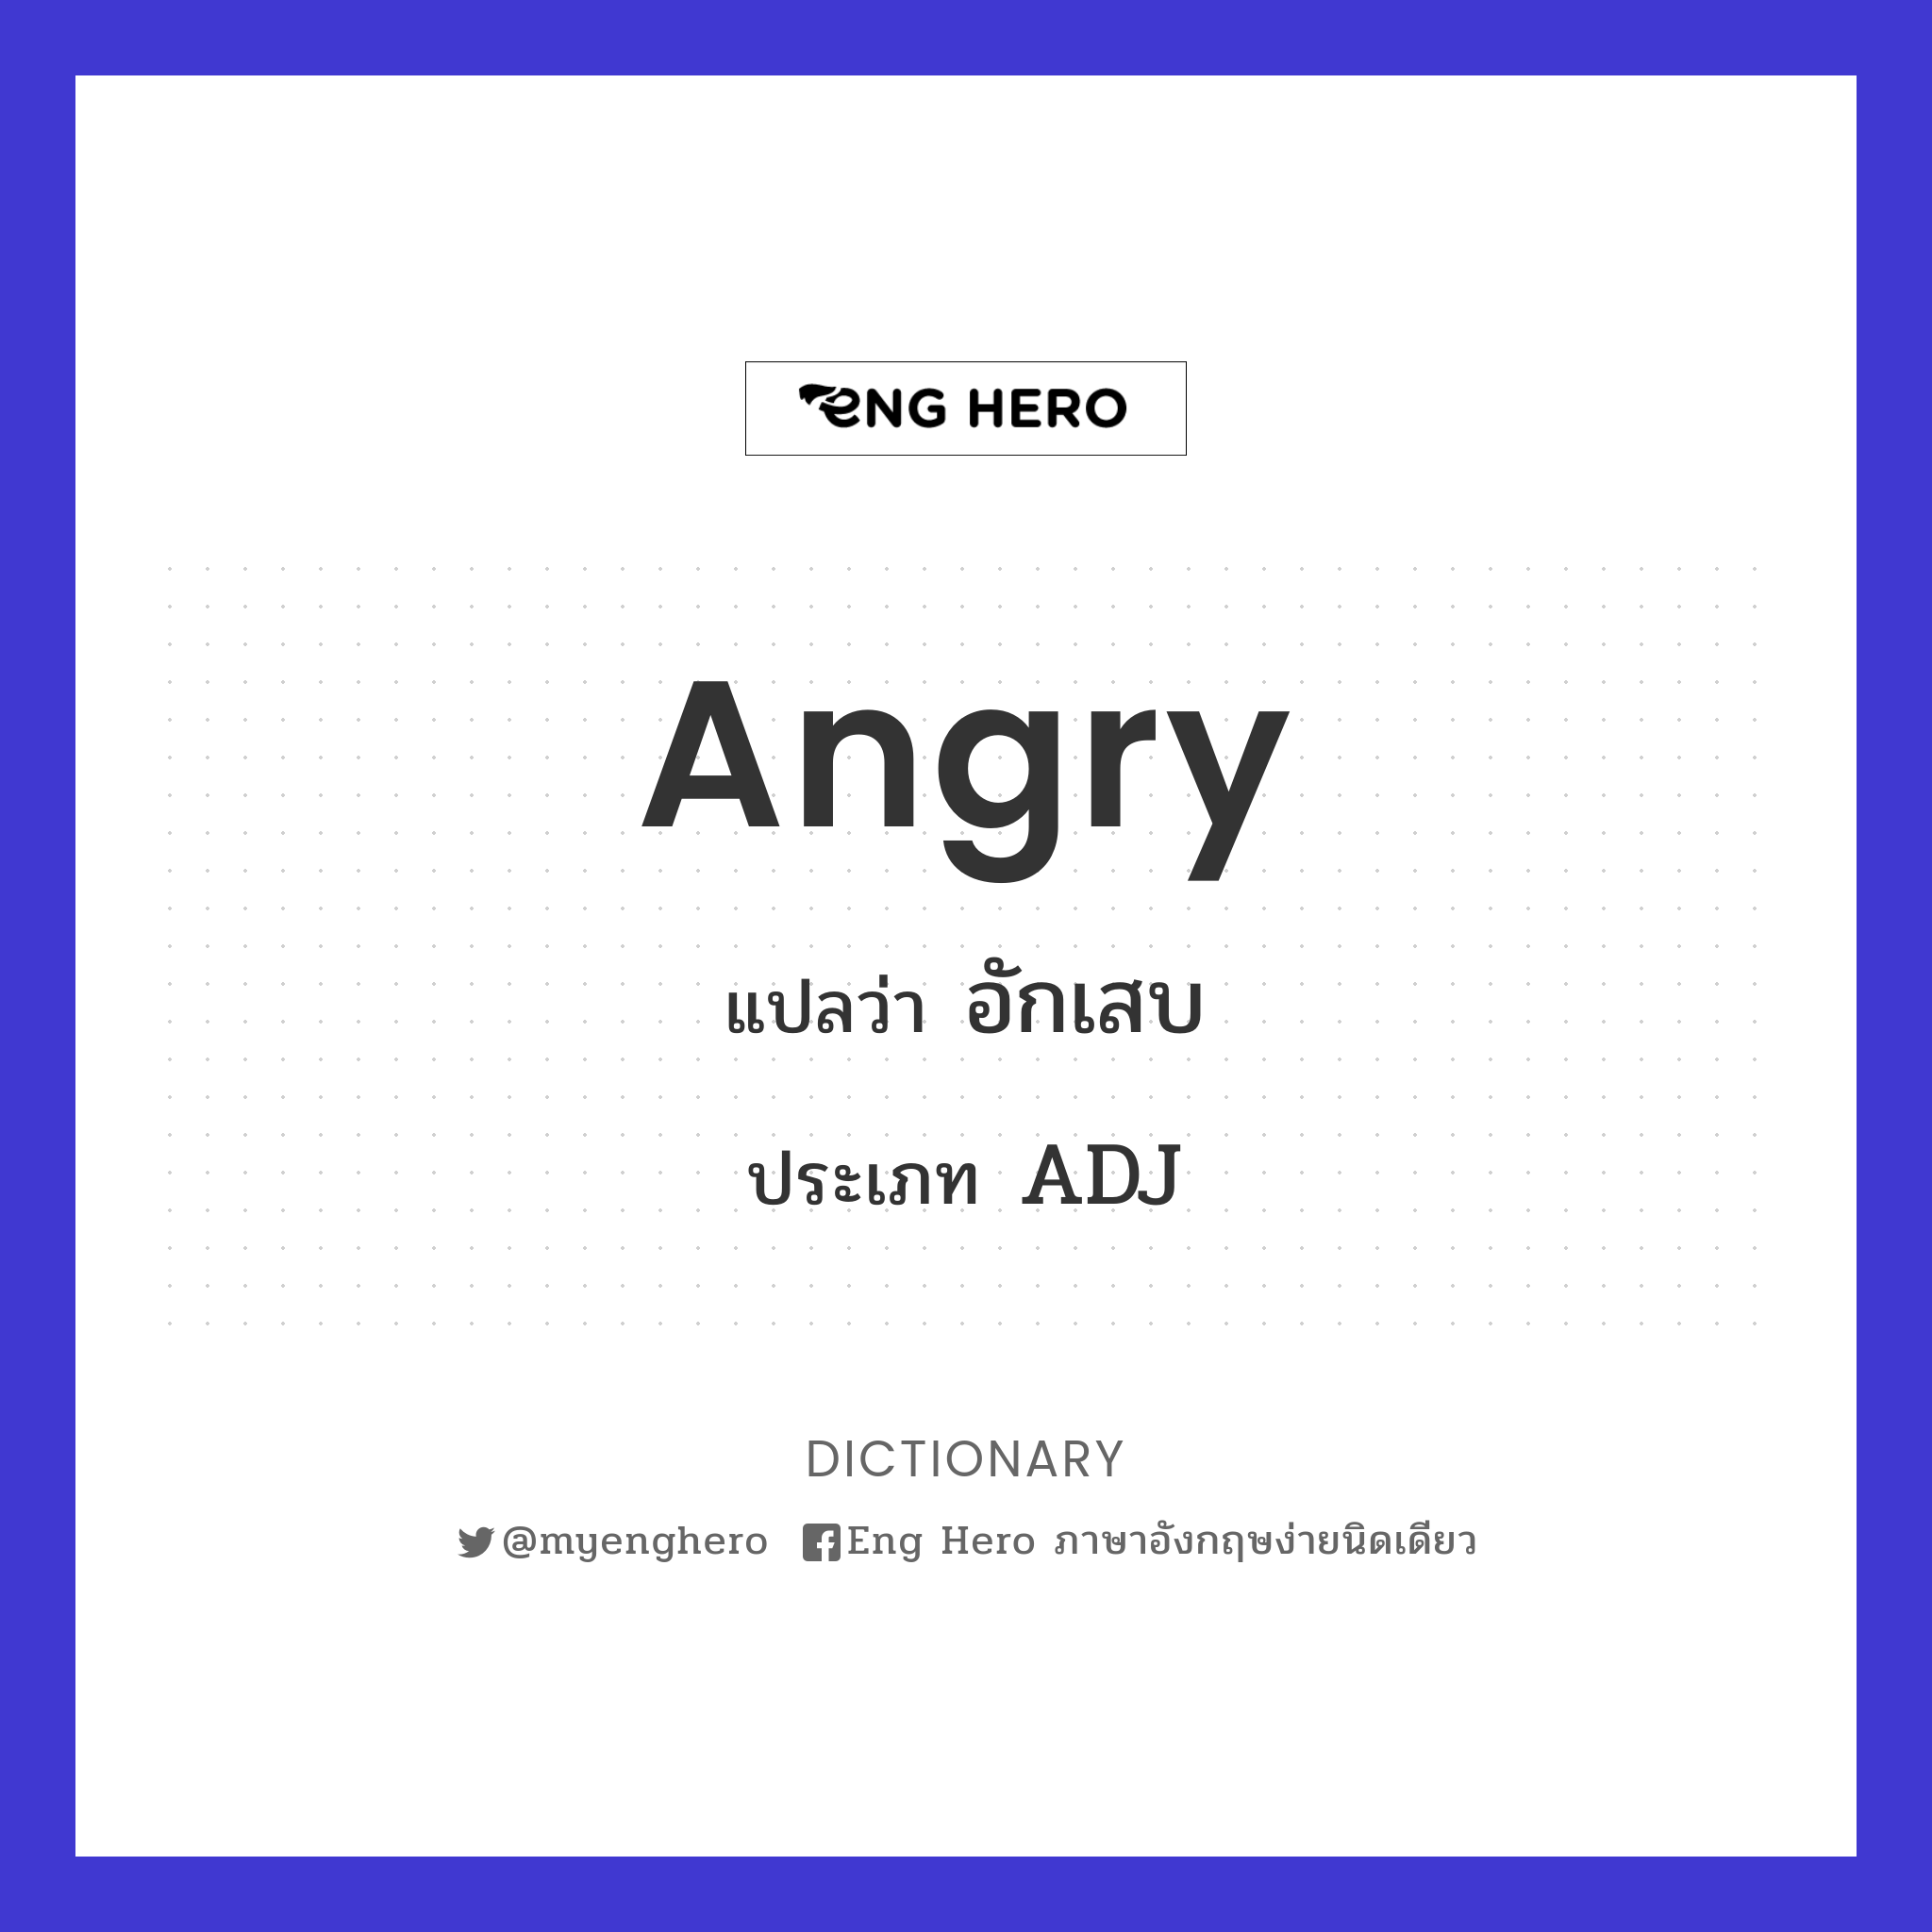 angry